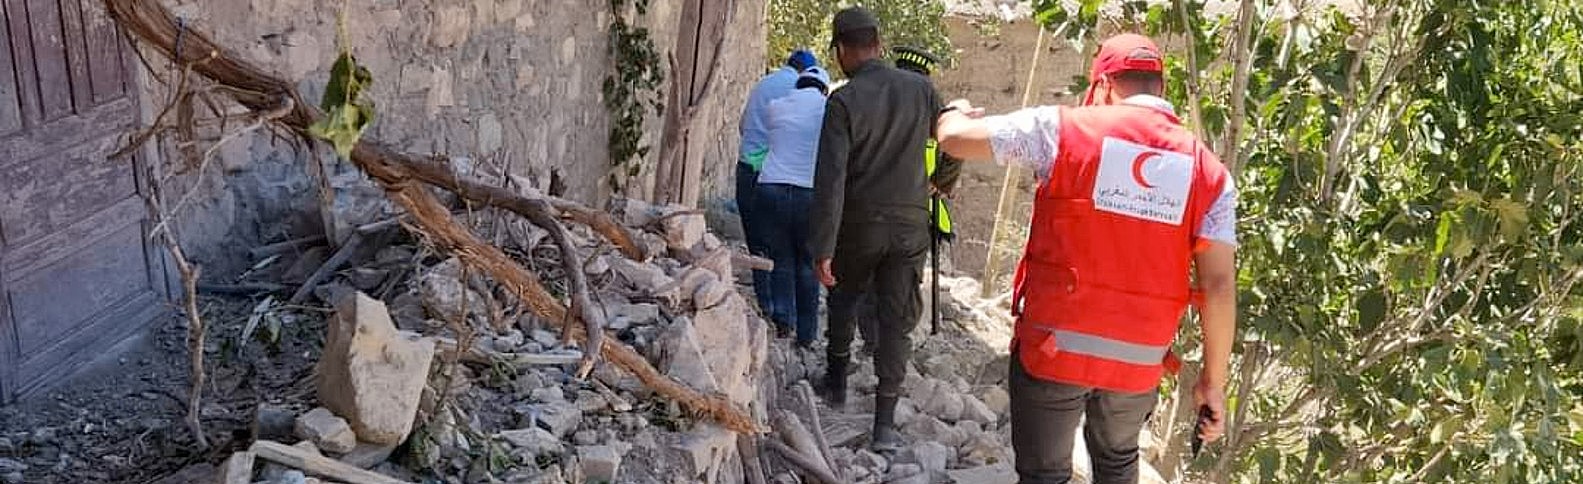 Ayuda a las personas afectadas por el terremoto de Marruecos